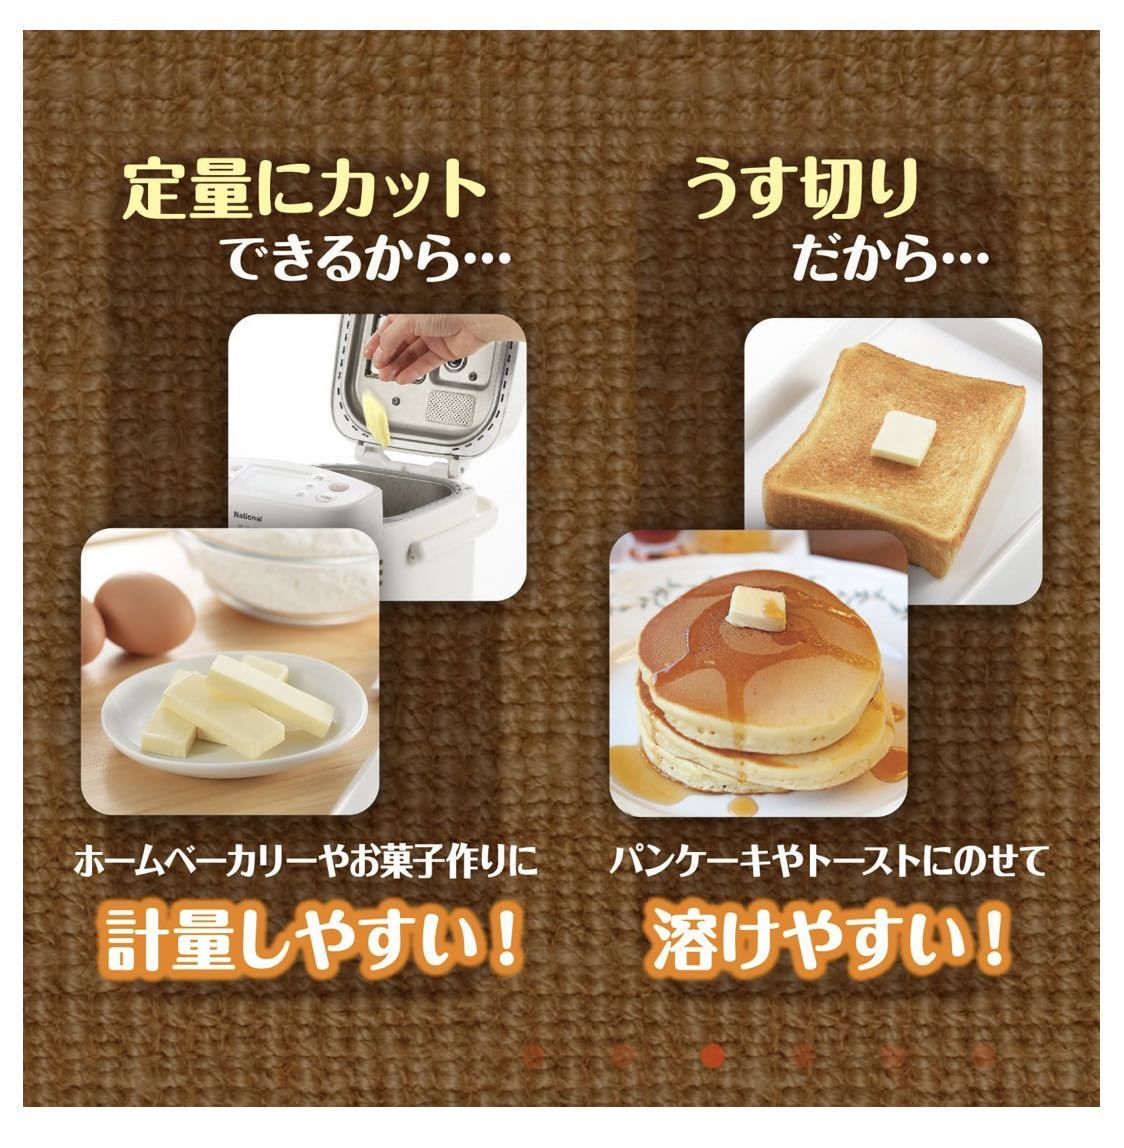 曙産業 バターカッティングケース 450g用 日本製 ST-3006 バターケース カッター付き バターカッター_画像はお借りしました